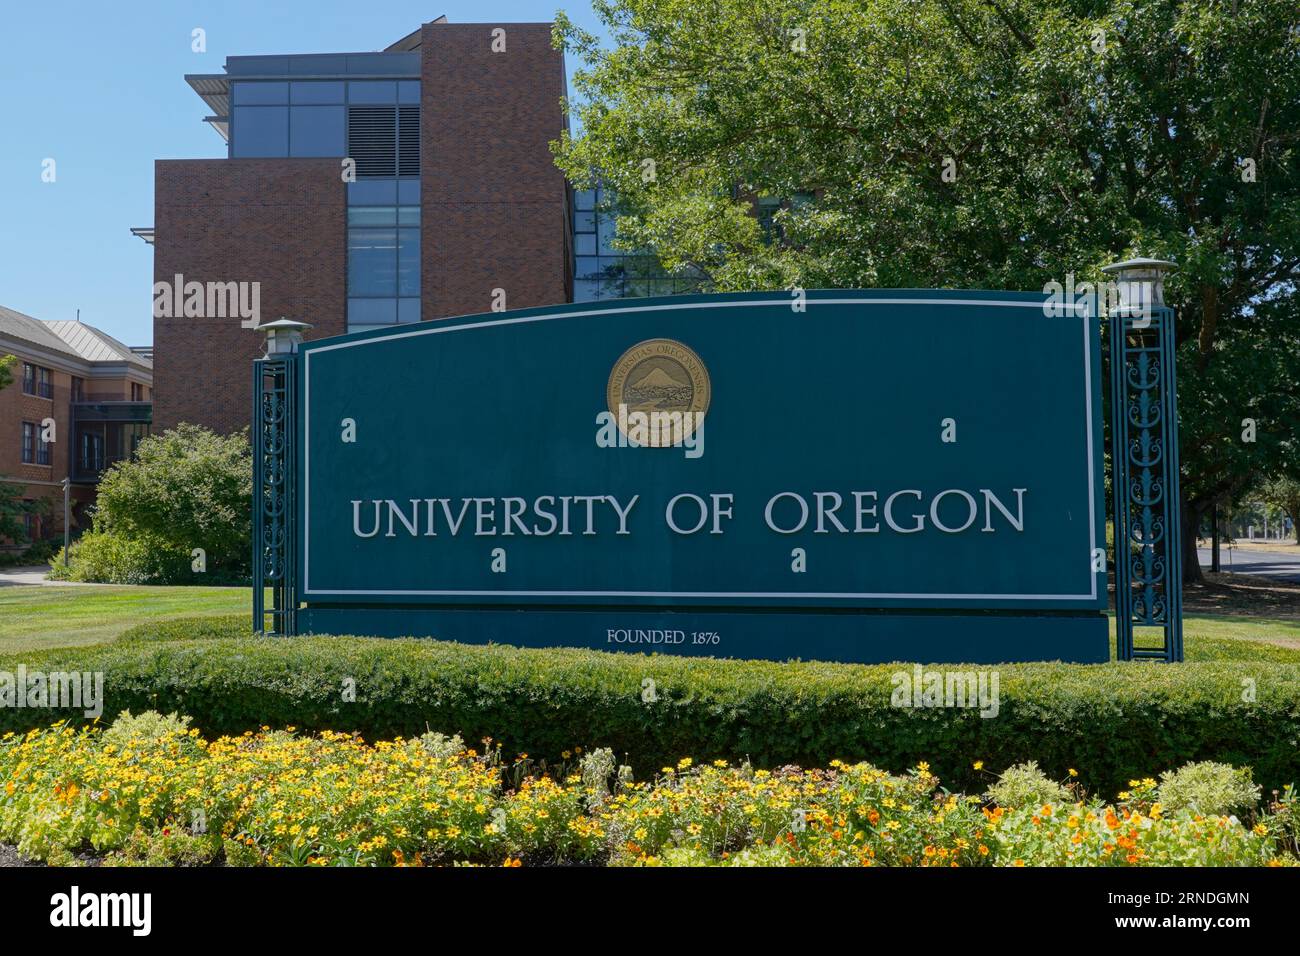 Enseigne du campus de l'Université de l'Oregon. L'Université de l'Oregon est une université de recherche publique située à Eugene, Oregon. fondée en 1876. Banque D'Images